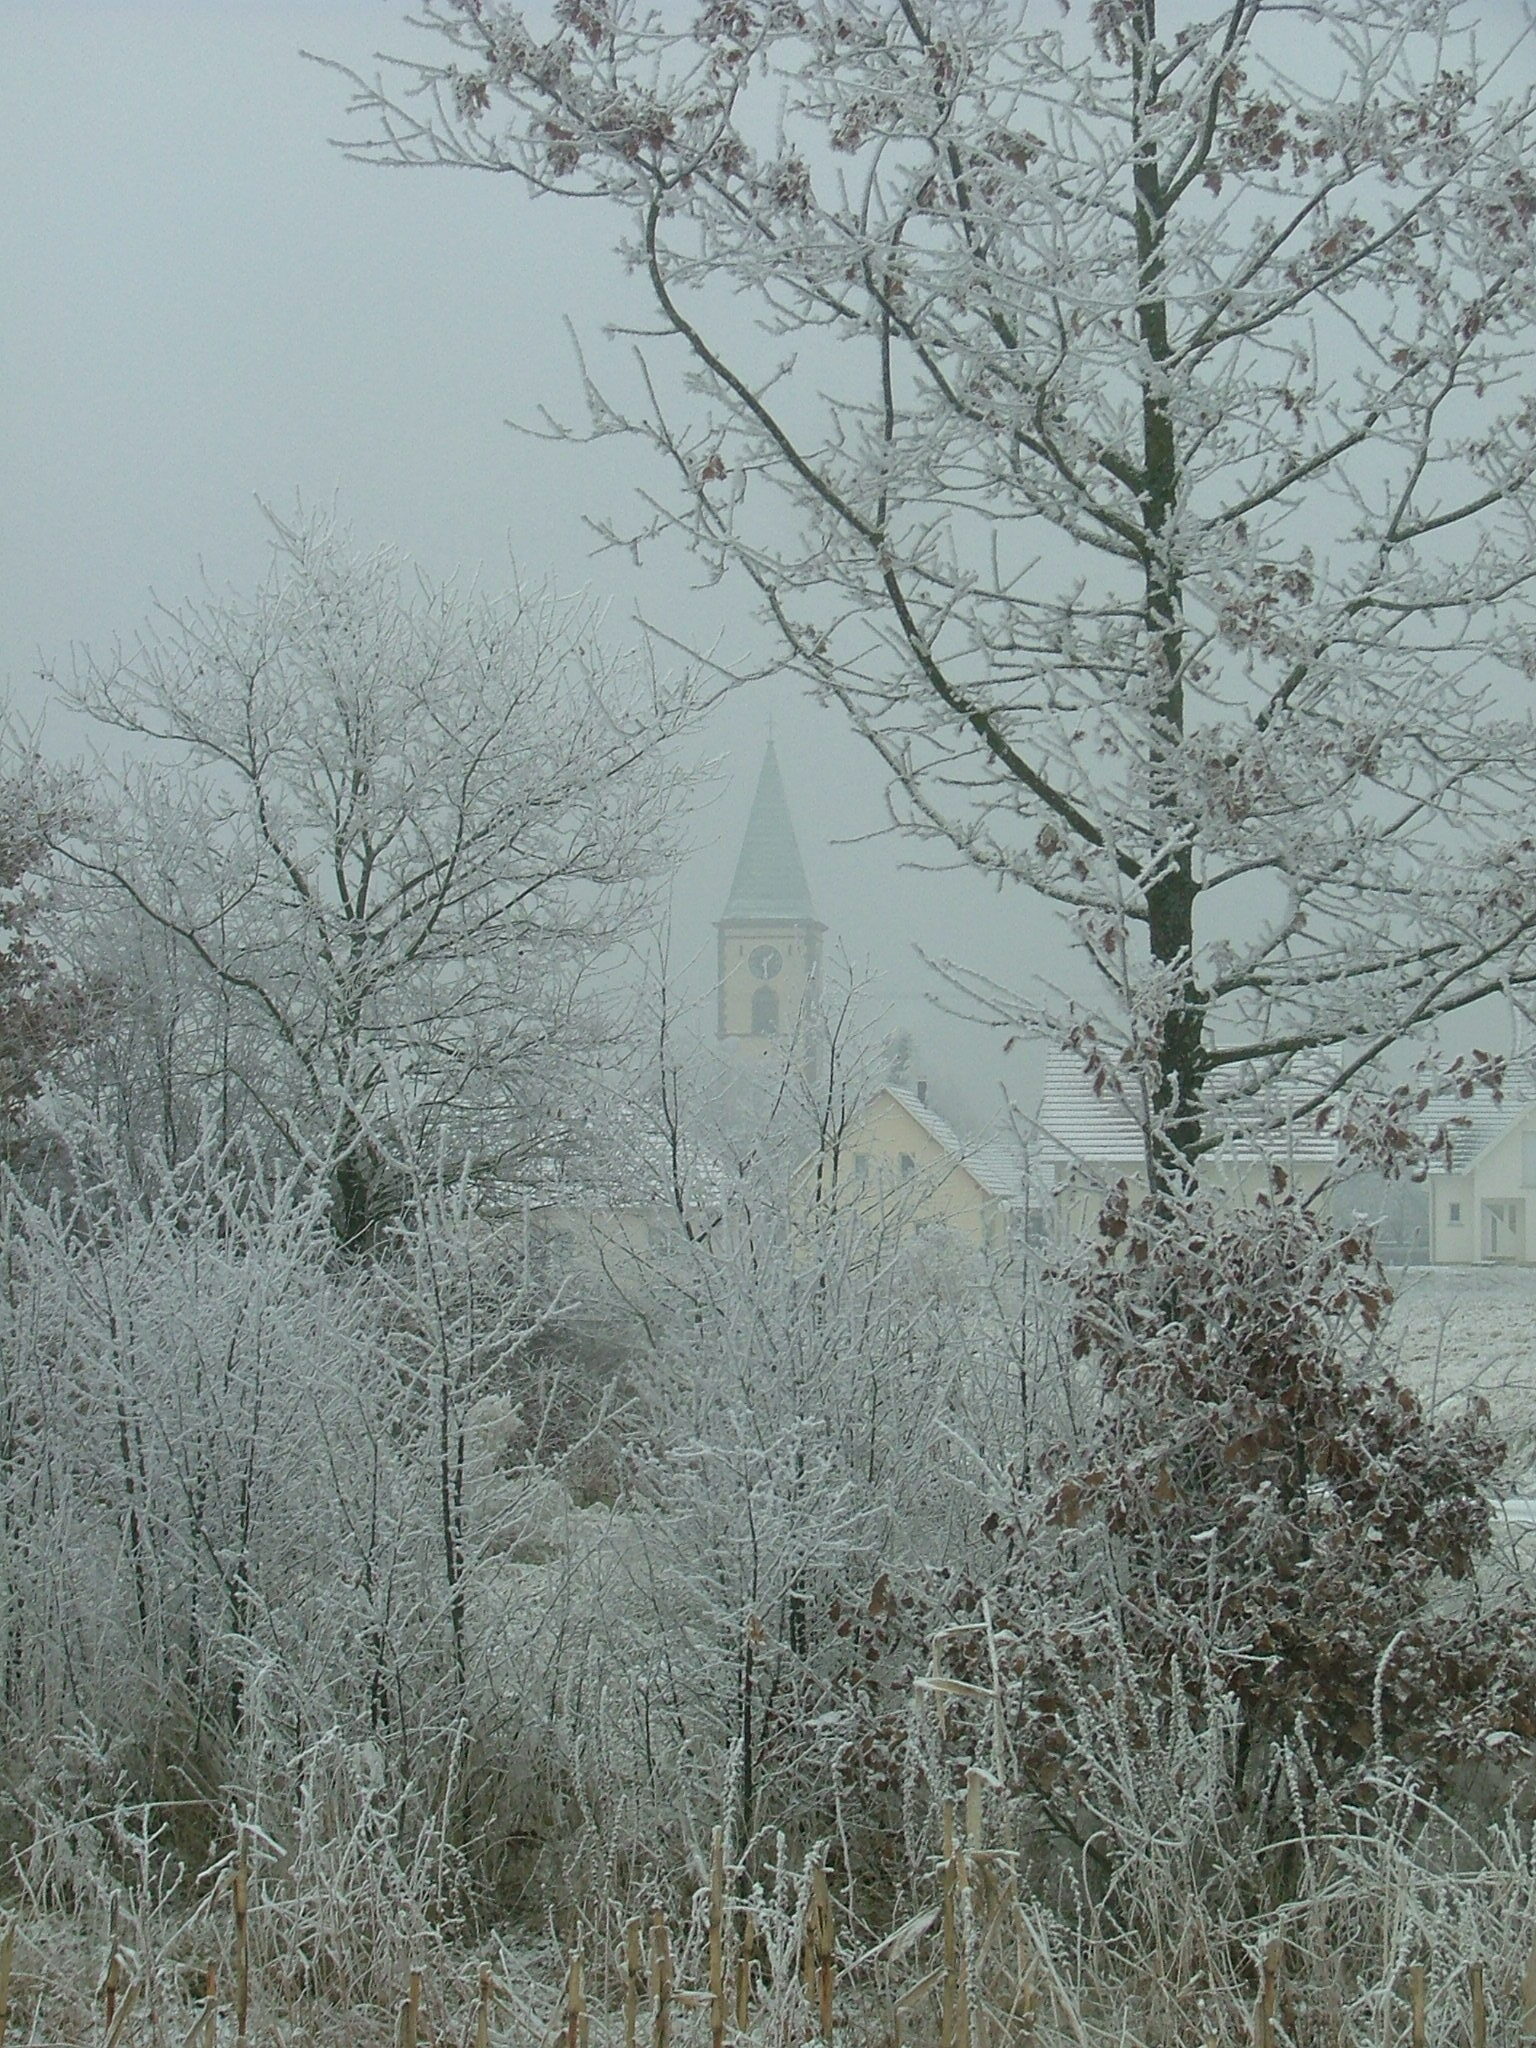 église sous la neige